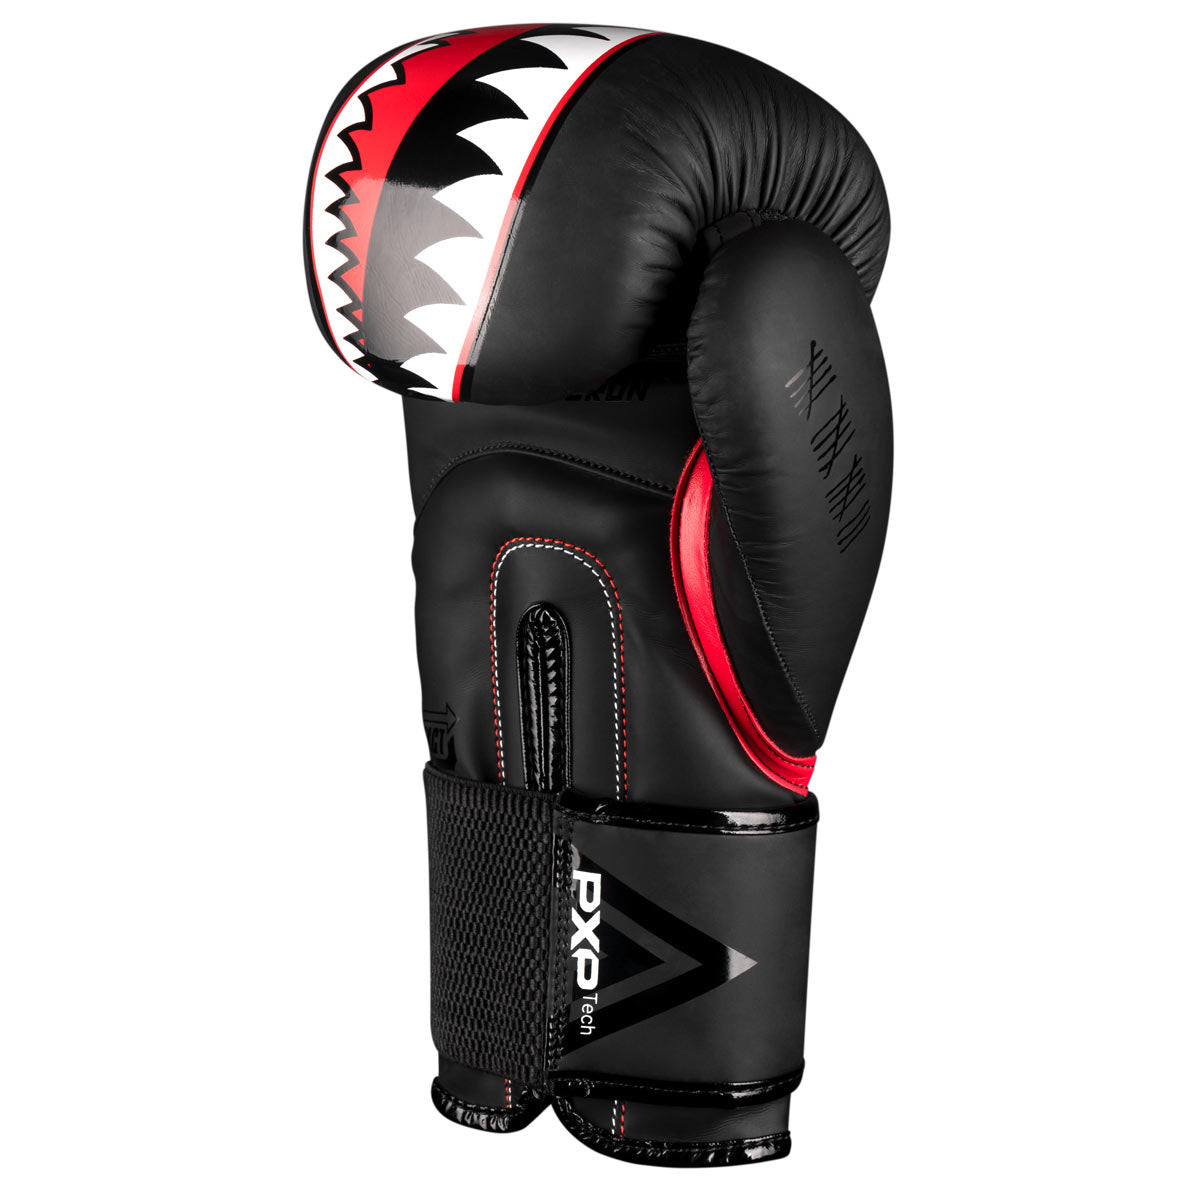 Die Phantom Fight Squad Boxhandschuhe in schwarz verfügen über einen elastischen Klettverschluss für eine maximale Unterstützung des Handgelenks.